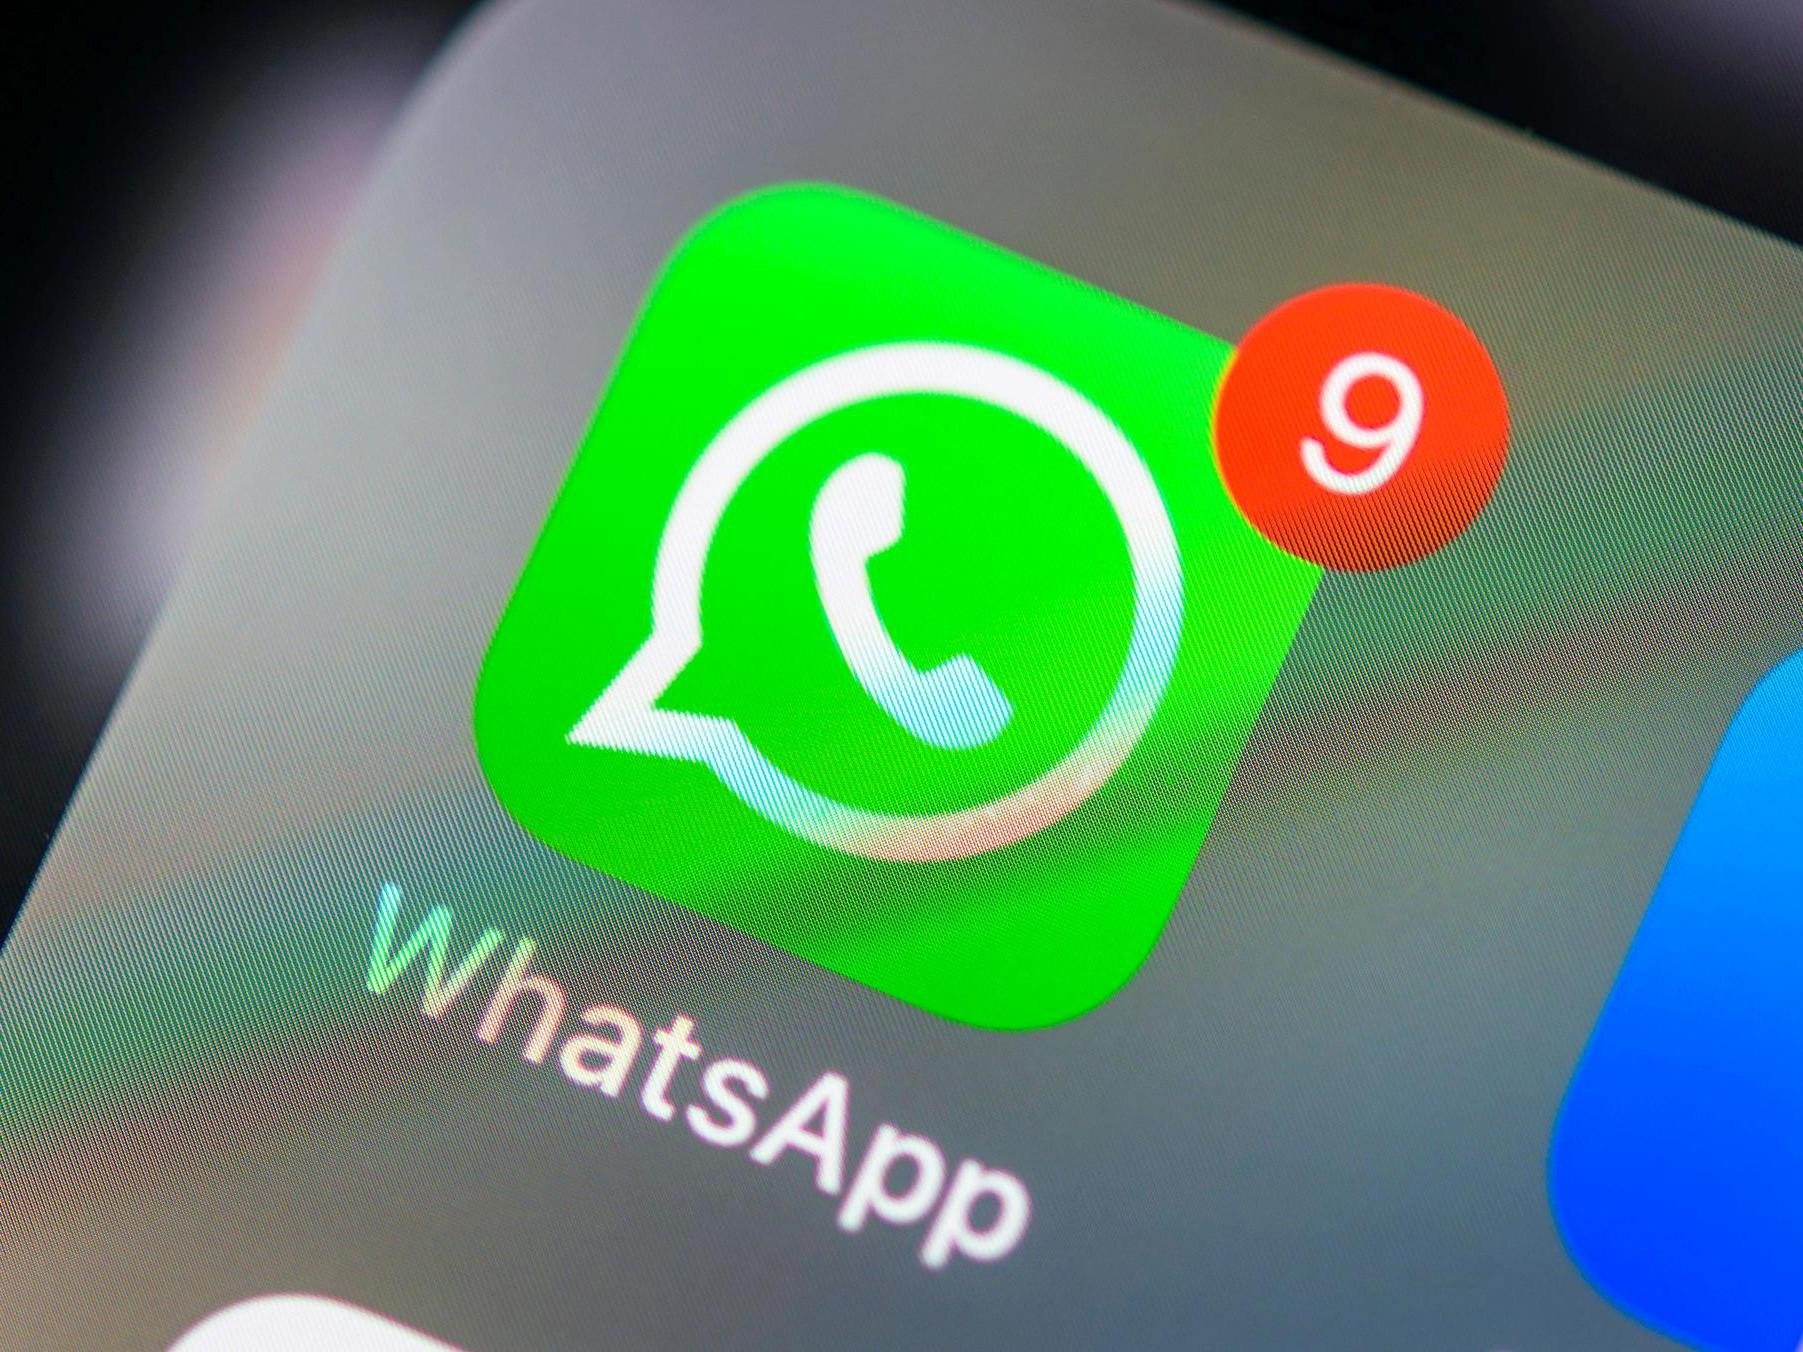 nueva aplicacion de whatsapp gratis